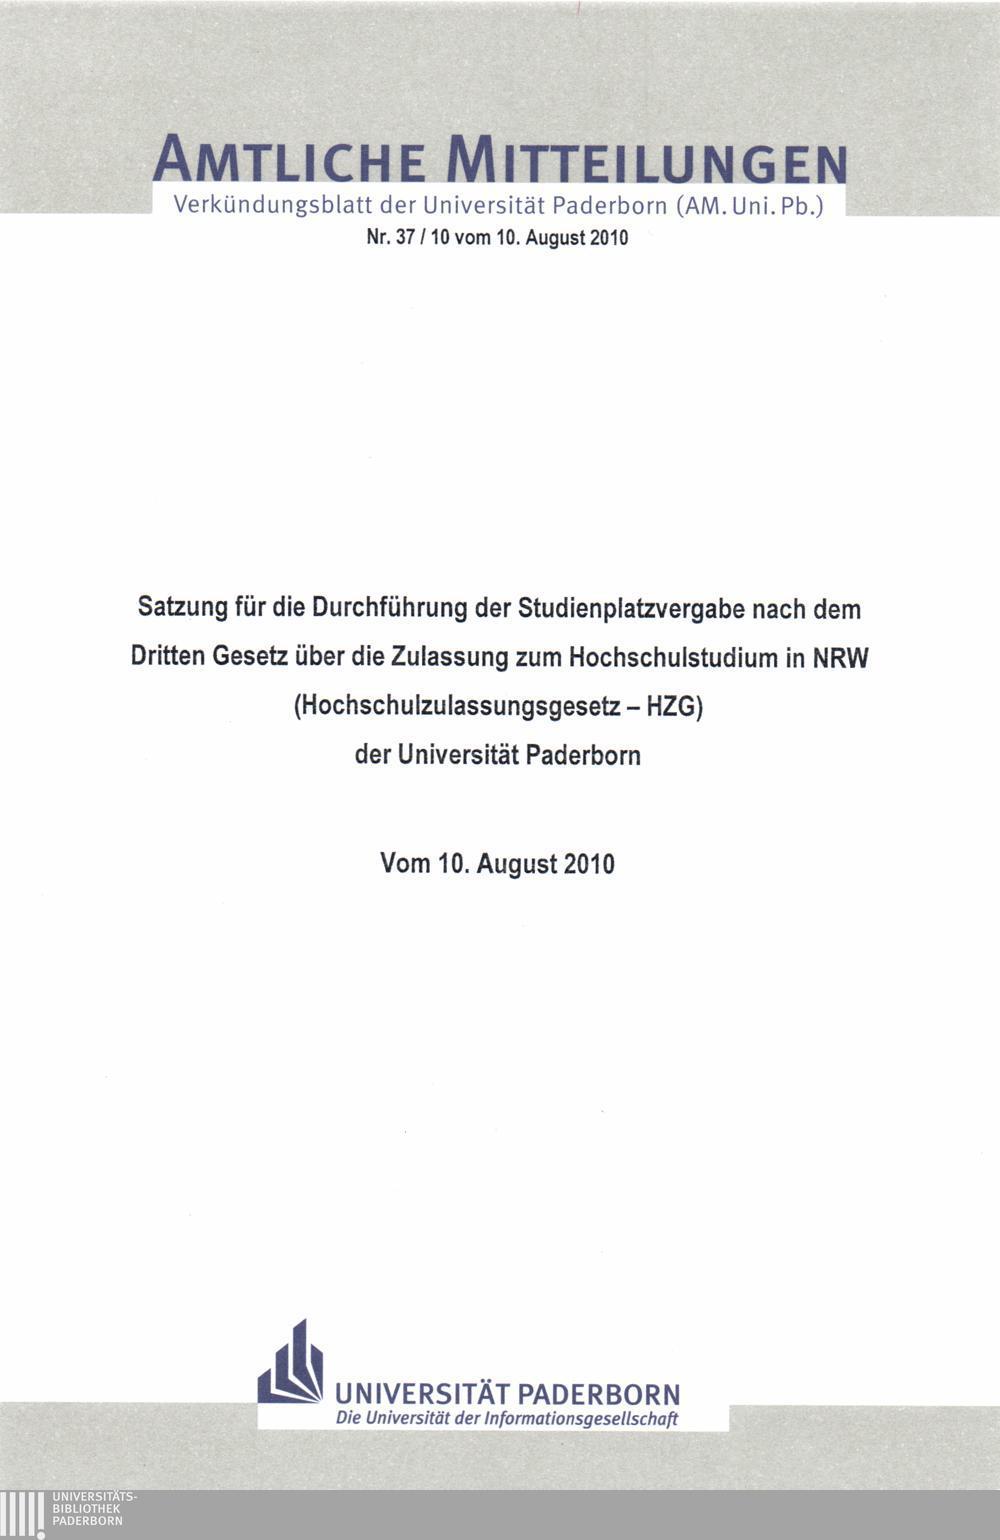 Amtliche Mitteilungen Verkündungsblatt der Universität Paderborn (AM. Uni. Pb.) Nr. 37/10 vom 10.